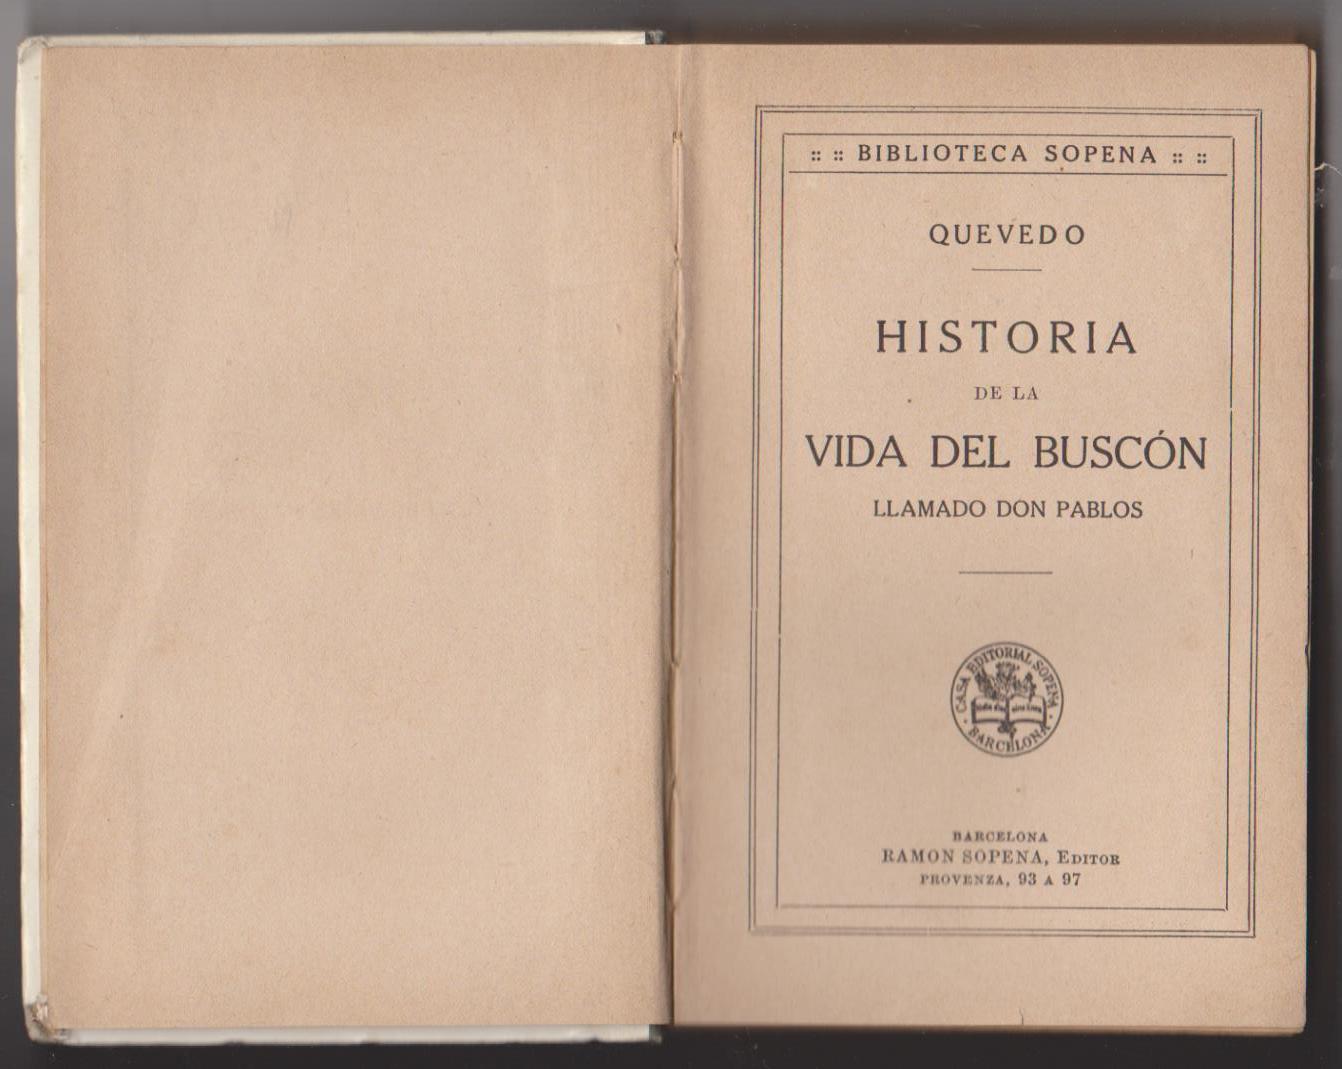 Francisco de Quevedo. Historia de la Vida del Buscón. Biblioteca Sopena 192?